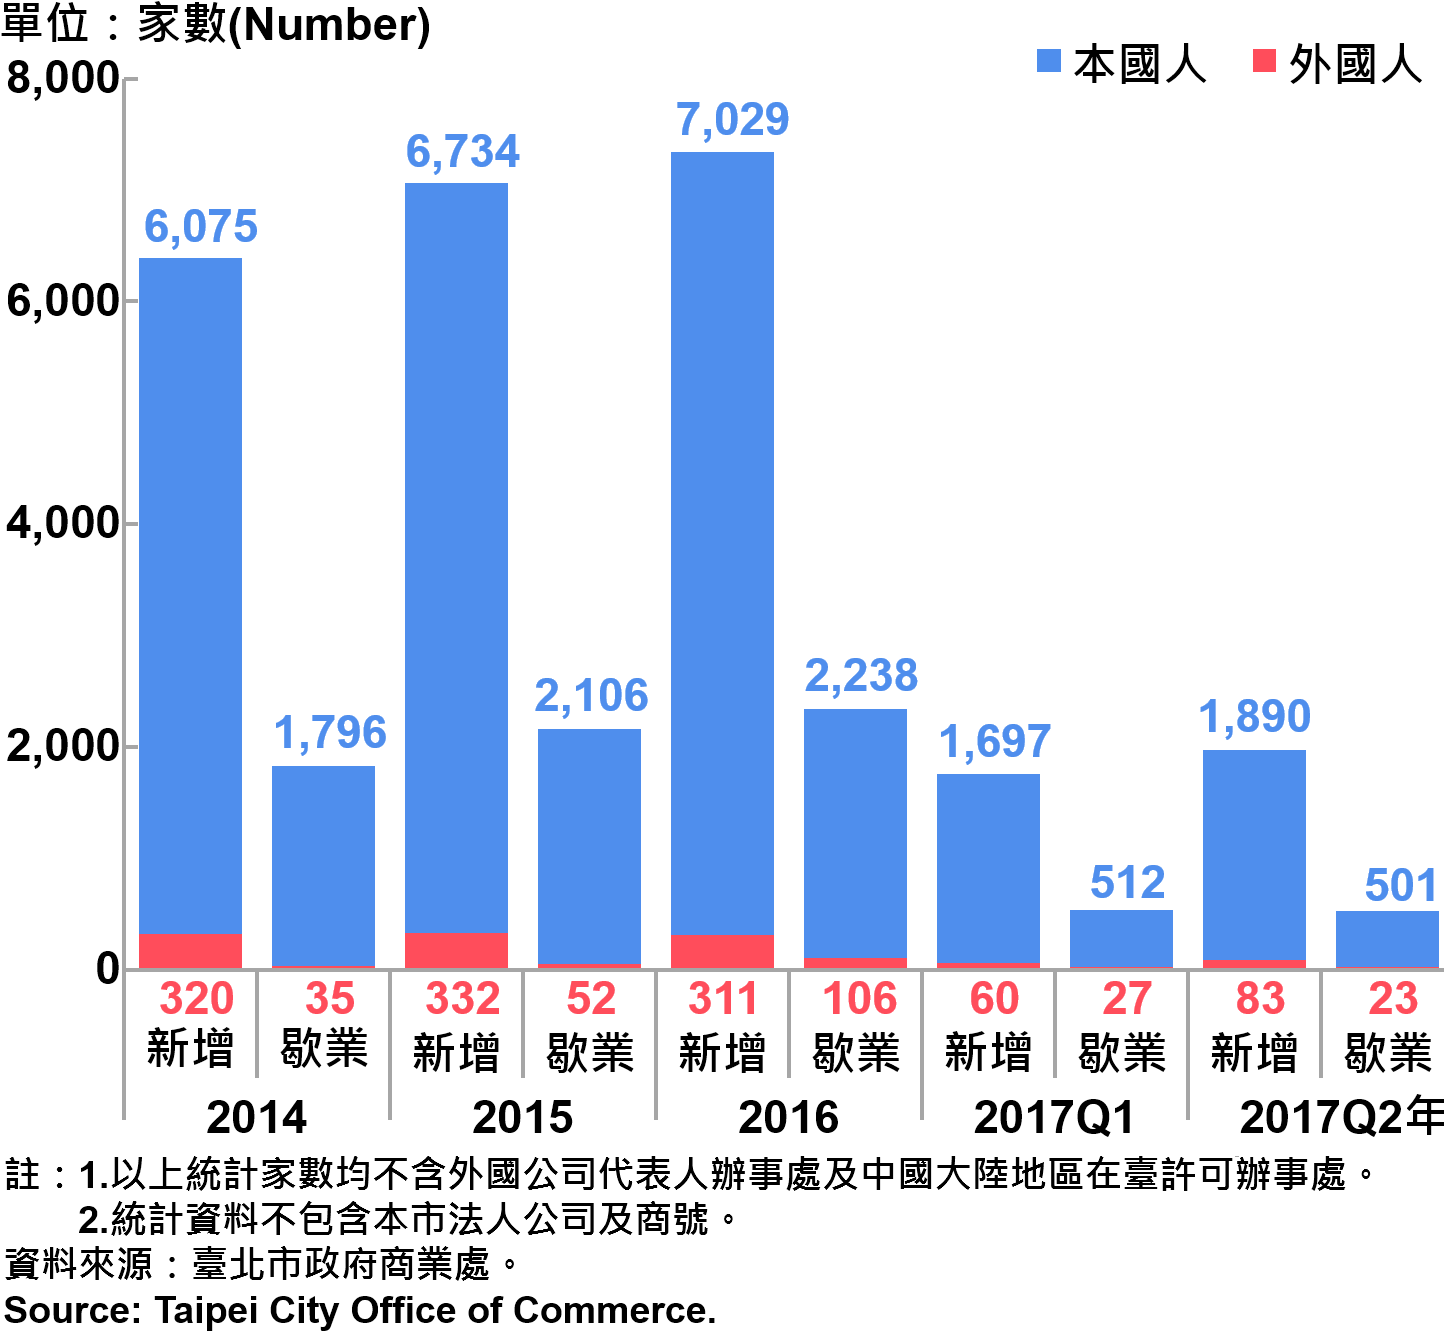 圖22、臺北市公司青創負責人為本國人與外國人分布情形—依新增及歇業家數—2017Q2 Responsible Person of Newly Registered Companies In Taipei City by Nationality - Number of Incorporation—2017Q2